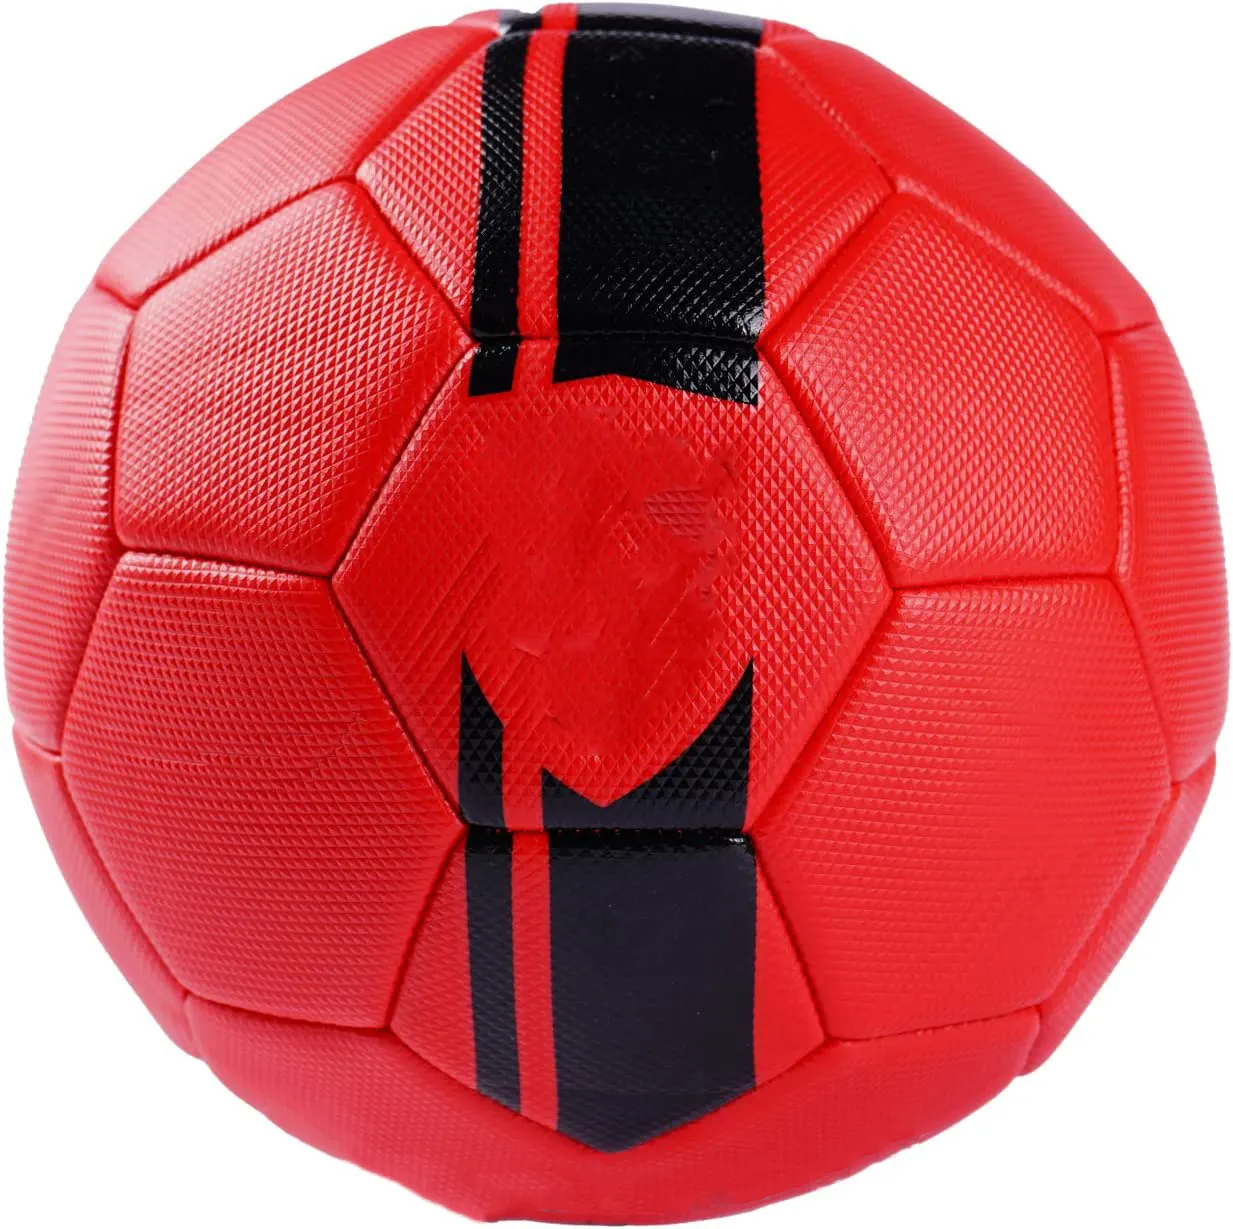 Оптовая продажа, футбольный мяч на заказ, футбольный мяч из ПУ, тренировочный мяч с логотипом, оригинальный футбольный мяч официального размера